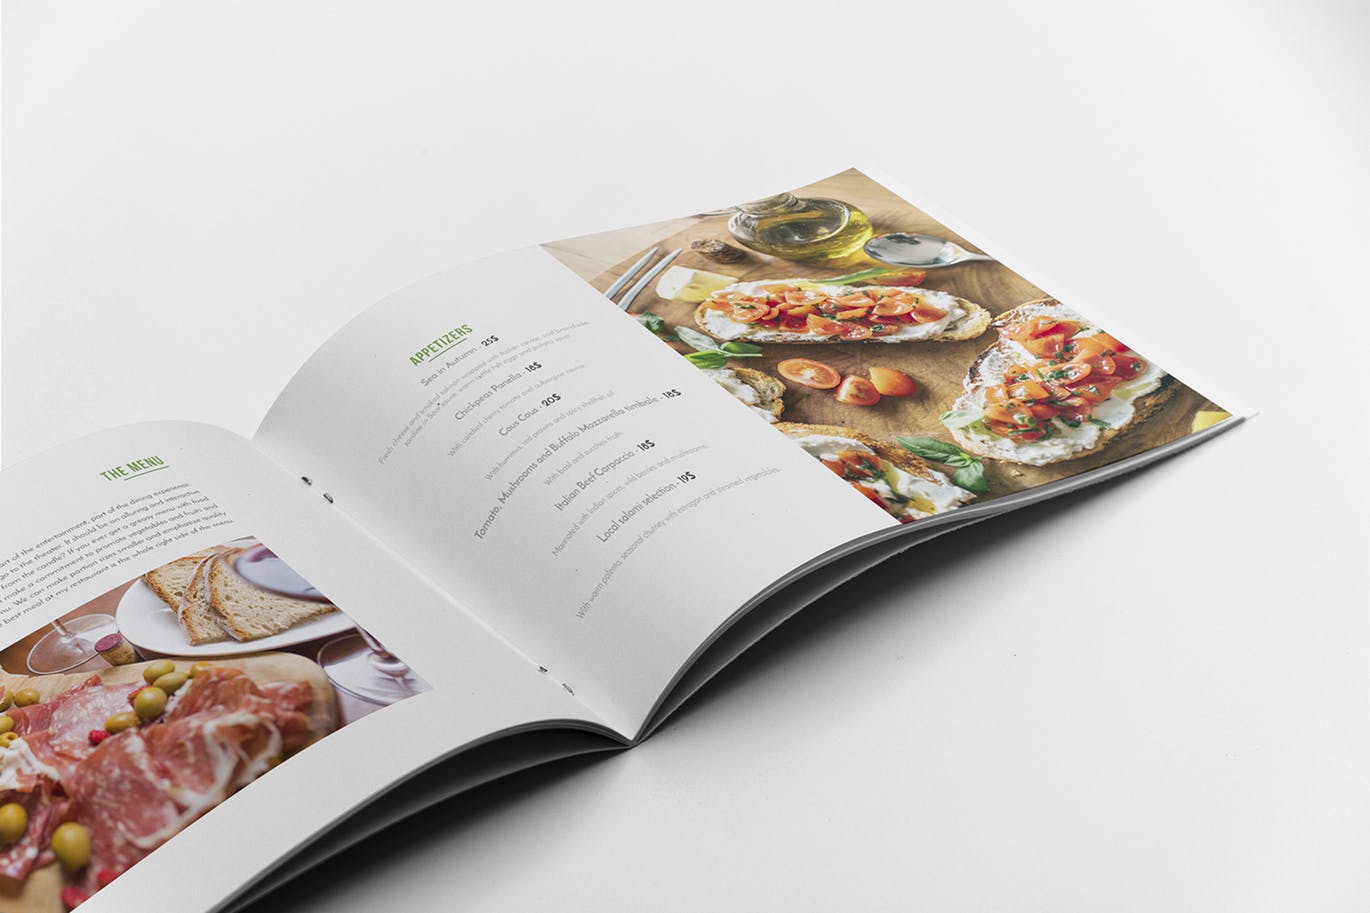 高档西餐厅宣传画册设计模板 Restaurant Brochure Template插图(7)